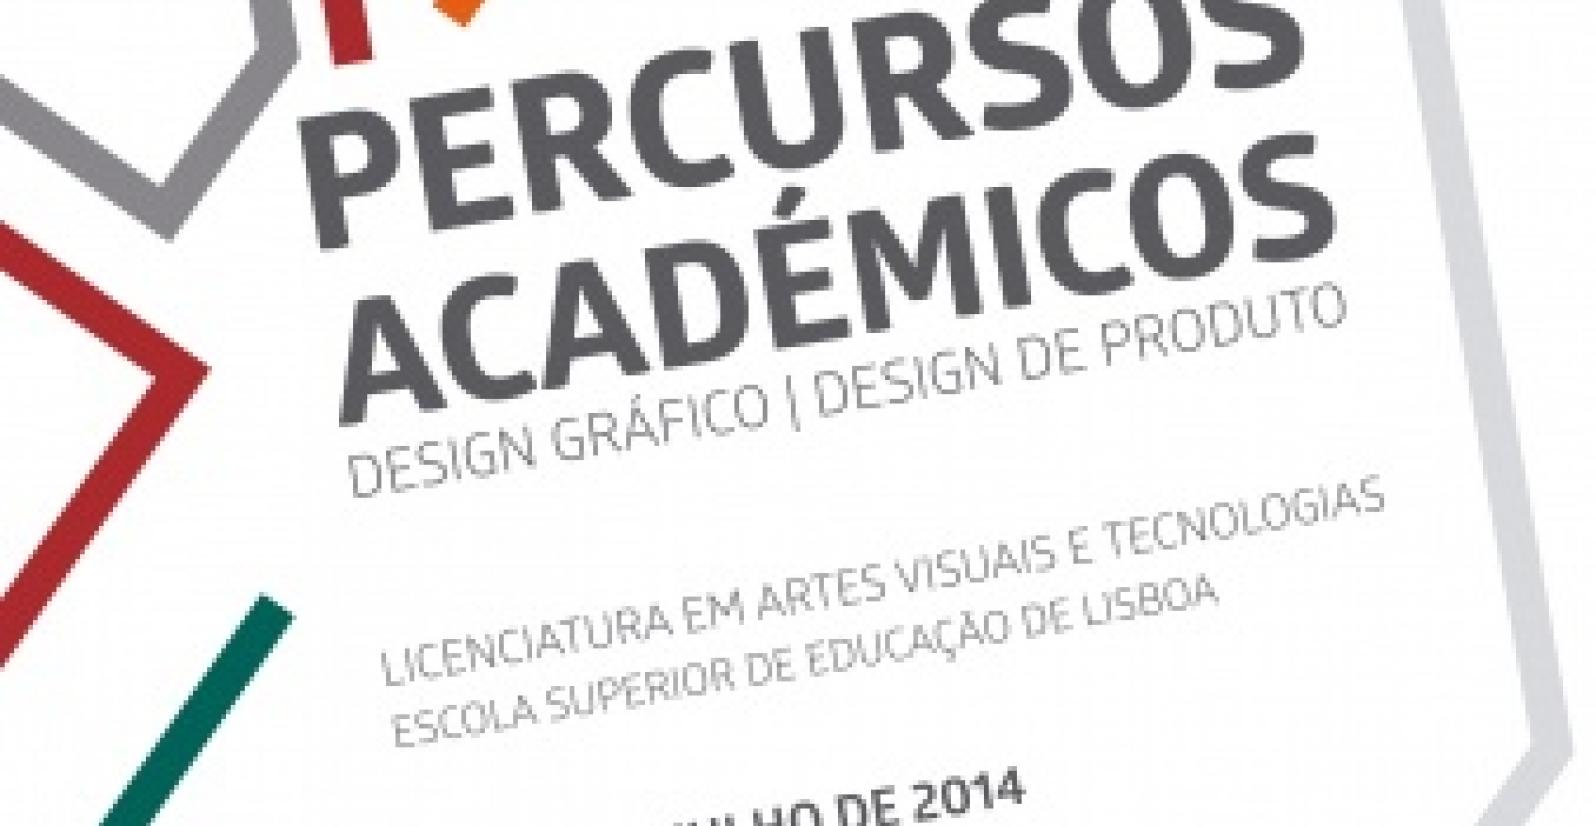 cartaz_percursos_academicos_a4.jpg